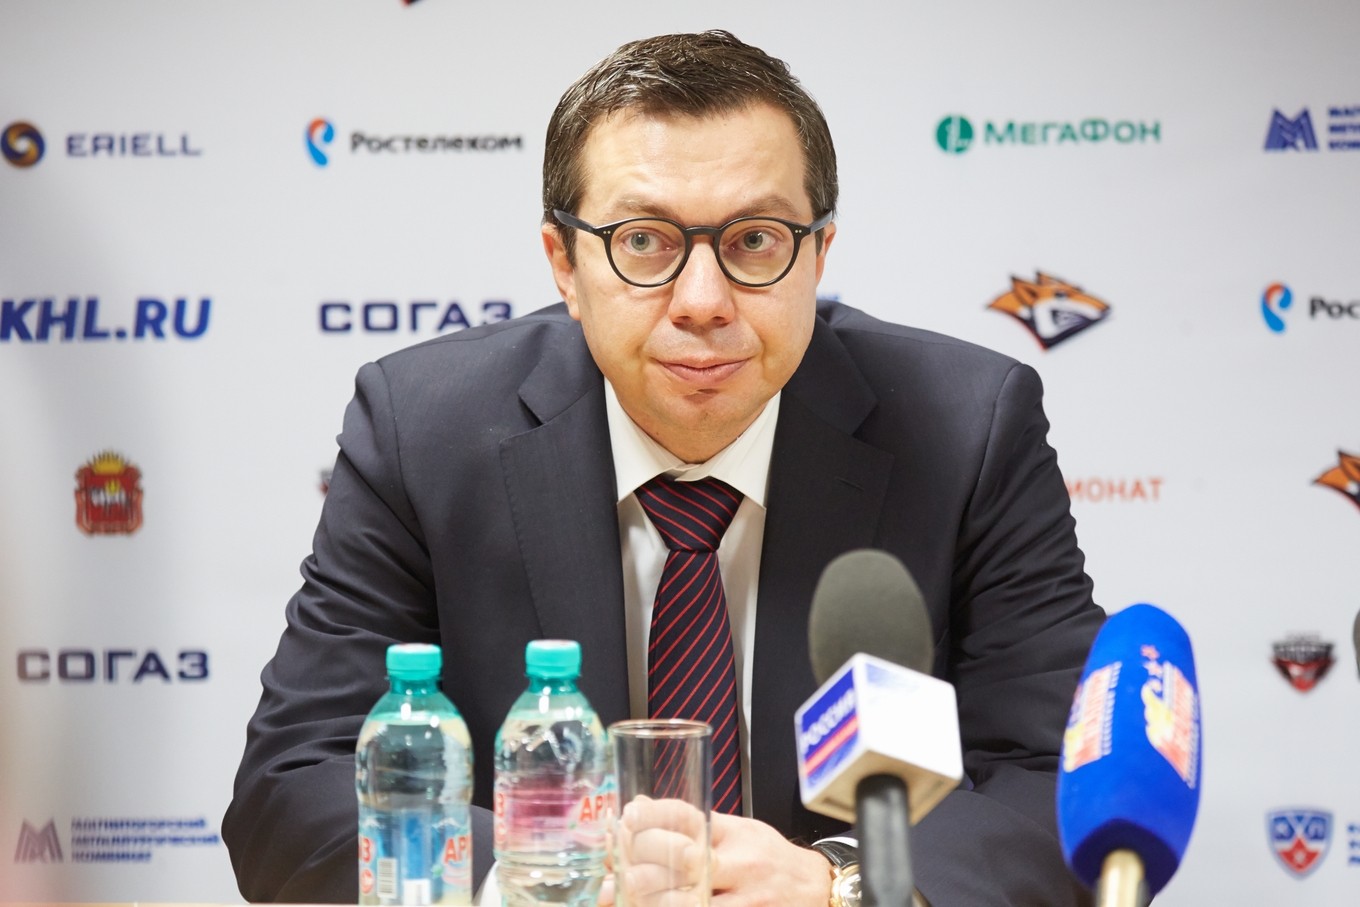 Воробьев тренер хоккей википедия. Воробьев Магнитогорск.